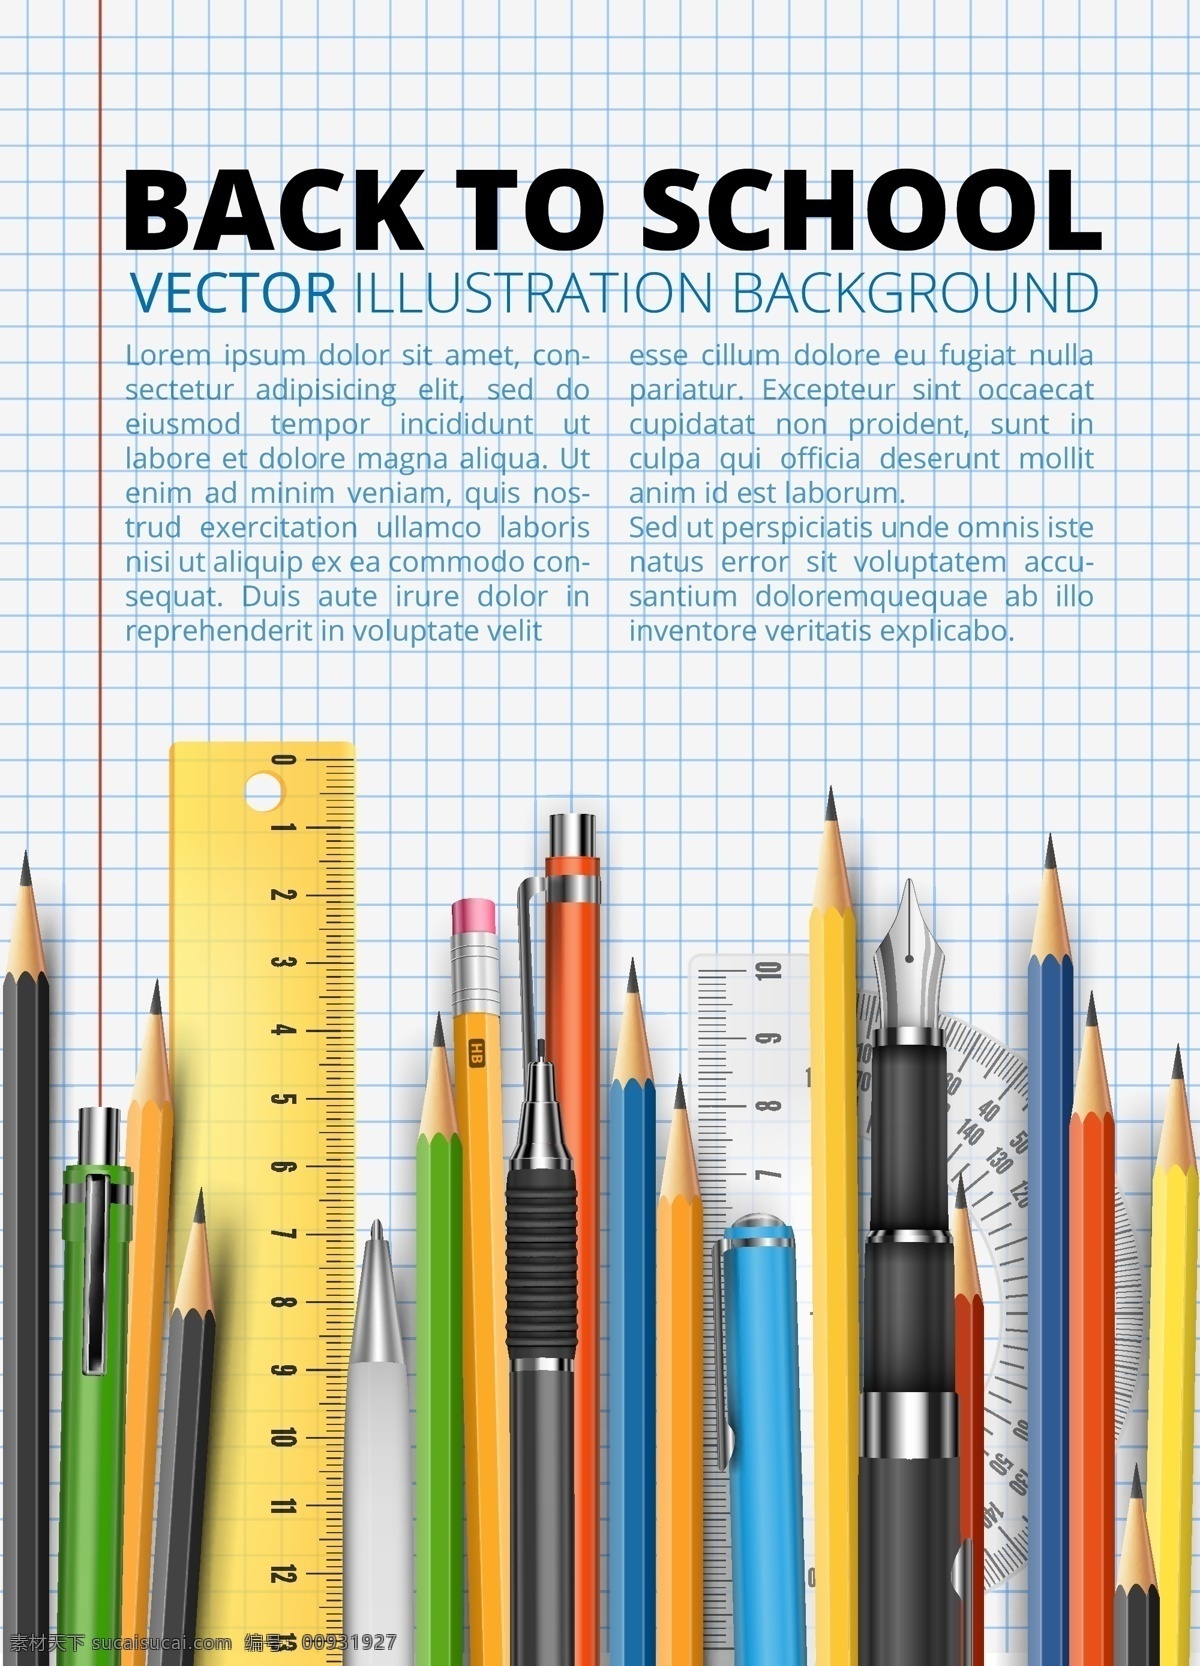 学习用品 回到学校 学习 读书 彩色铅笔 画笔 直尺 手绘 矢量素材 生活百科 矢量